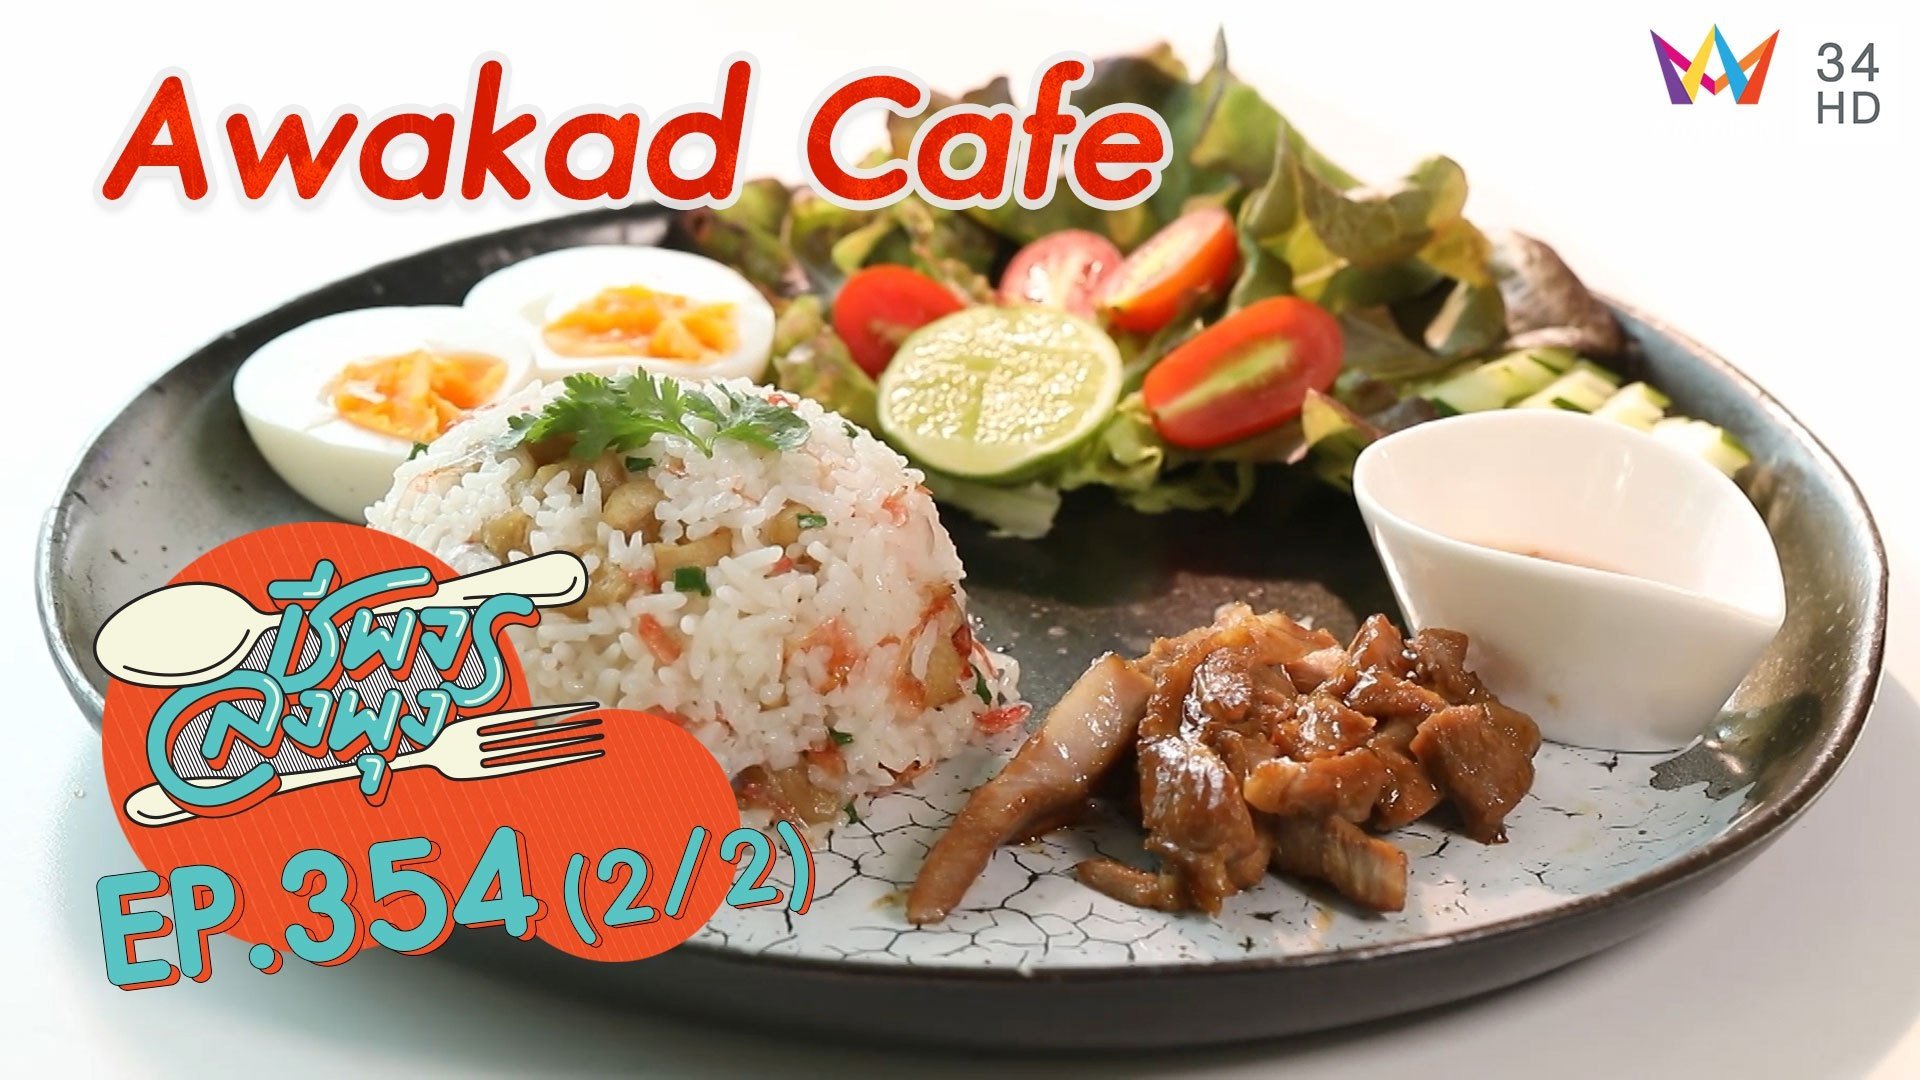 ล่องอวกาศกินอาหารอร่อยๆ @ ร้าน Awakad Cafe | ชีพจรลงพุง | 26 ธ.ค. 64 (2/2) | AMARIN TVHD34